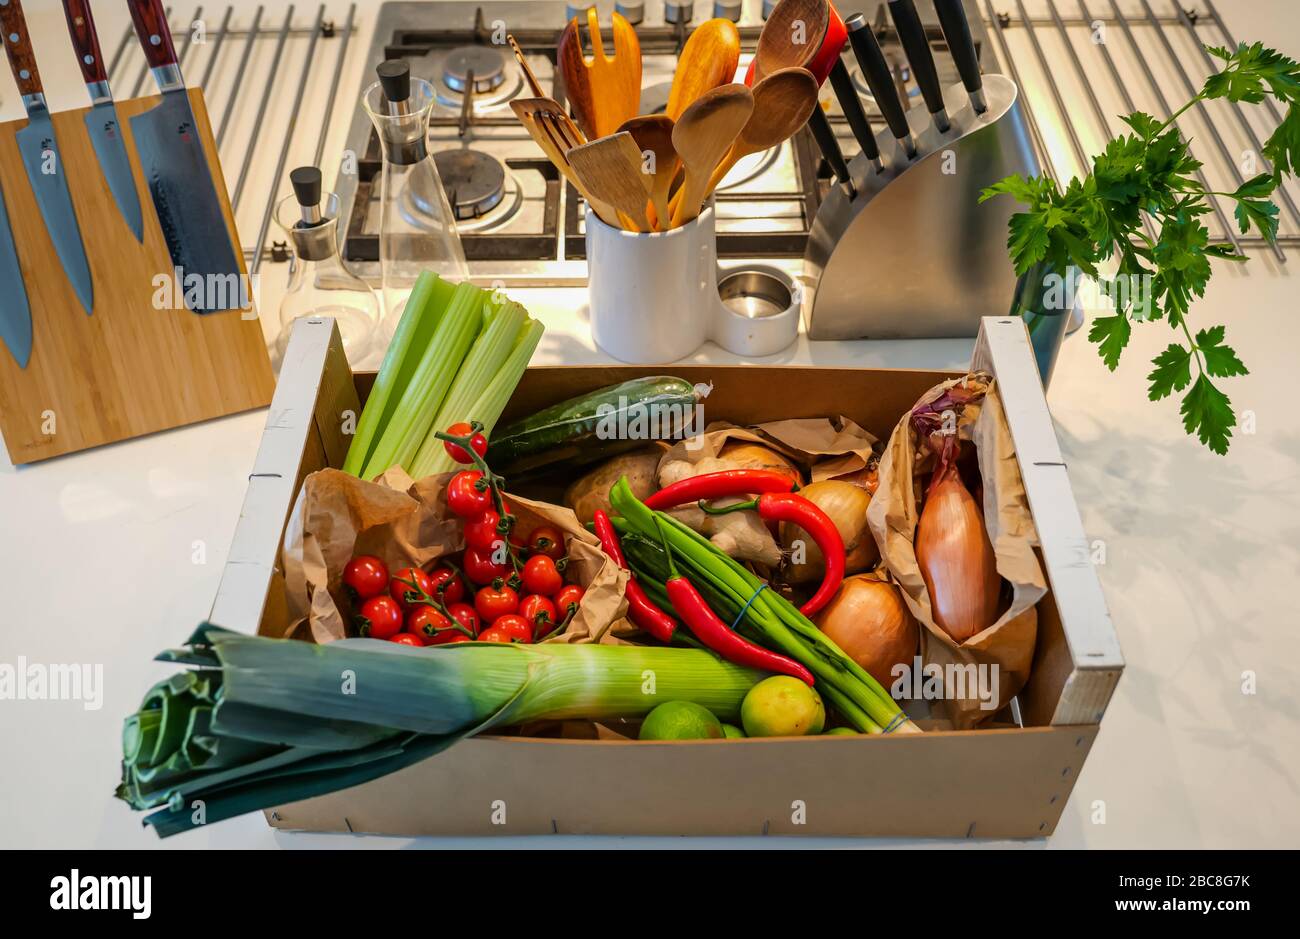 Lokale Lieferung von frischem Gemüse an der Küchenecke: Sellerie, Kirschtomaten, Lauch, Zwiebeln, Kartoffeln, rote Chilis, Frühlingszwiebeln & Limes Stockfoto